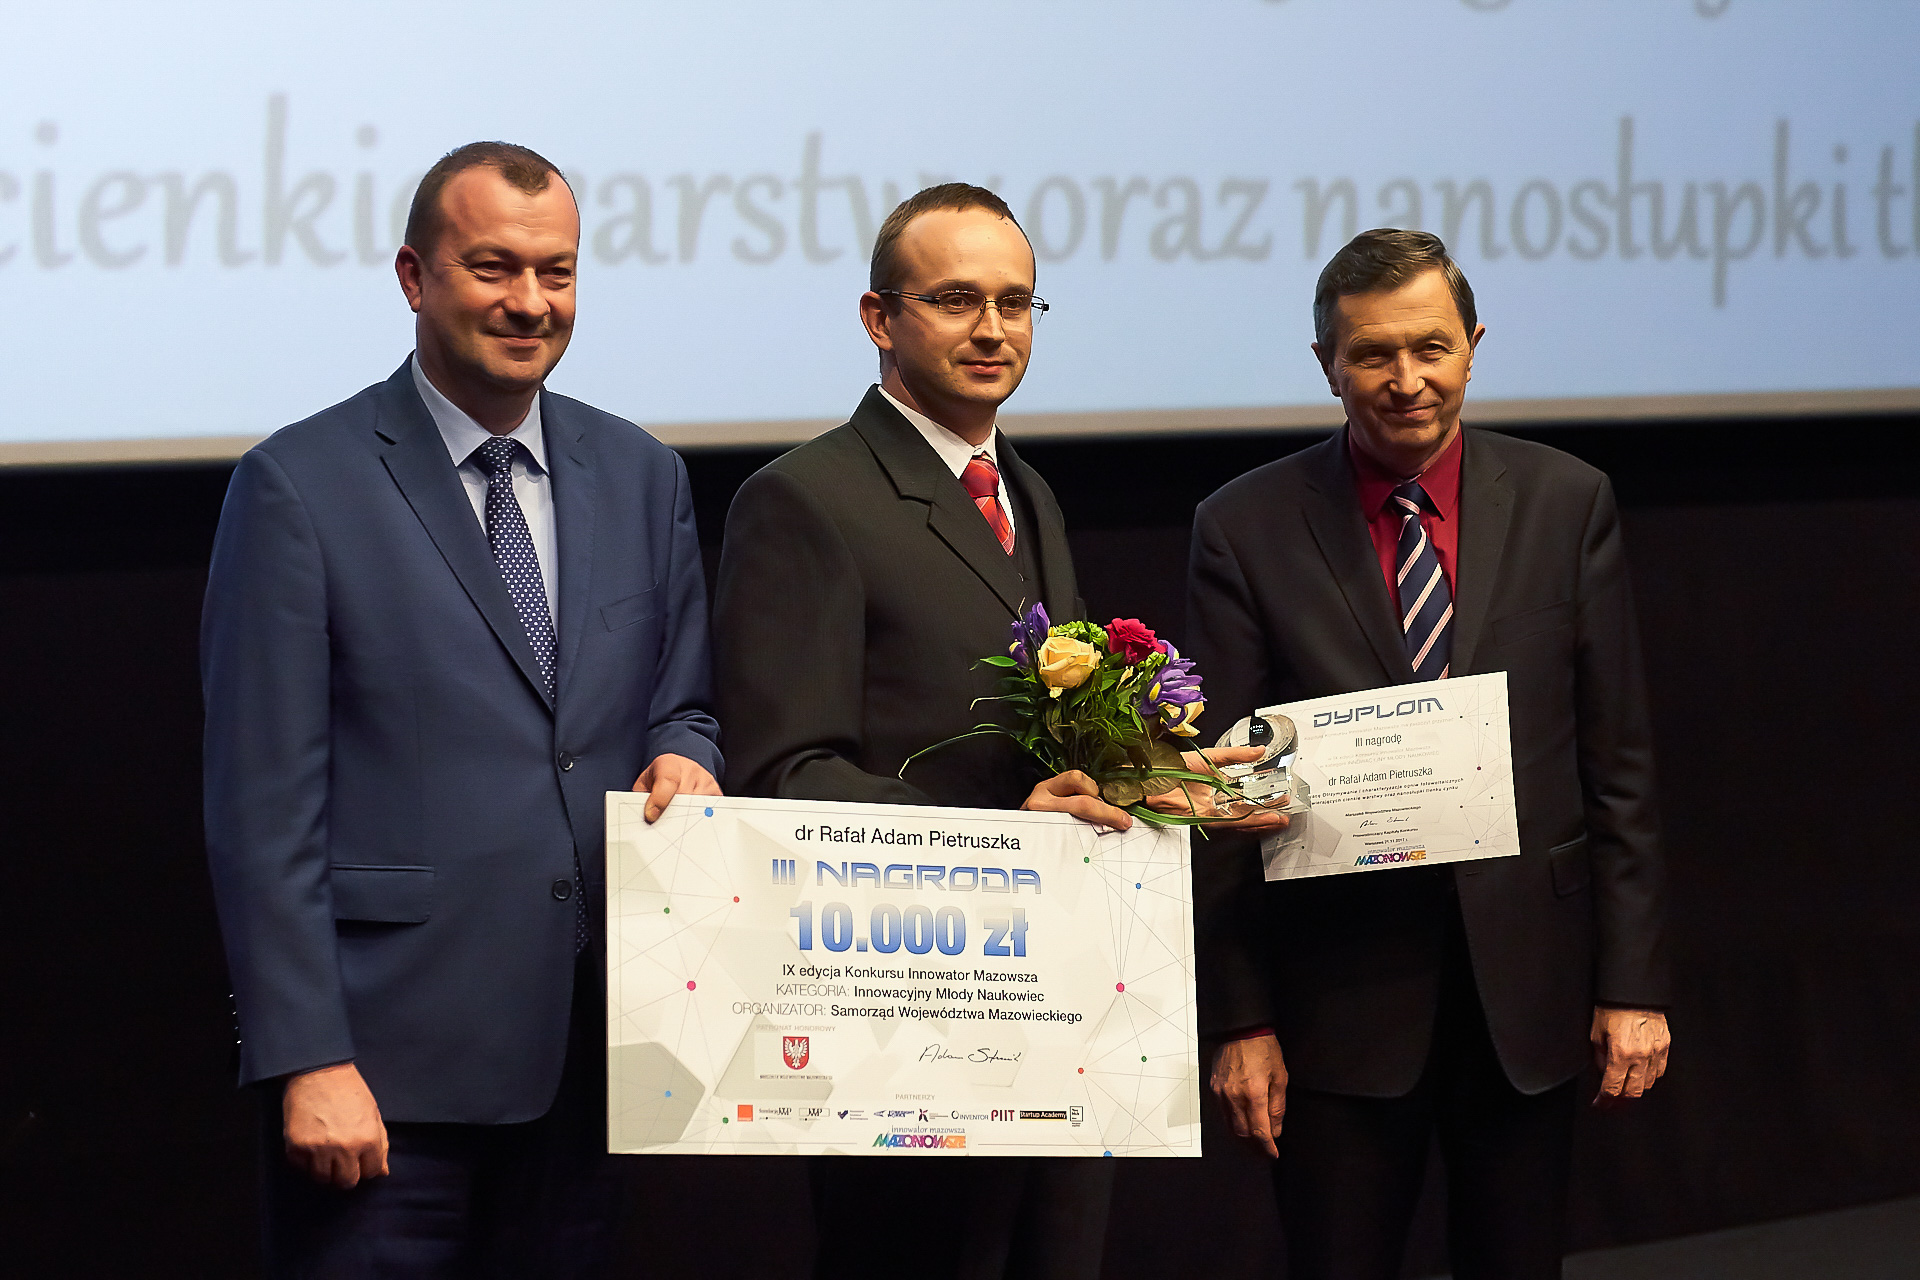 Wręczenie nagrody za III miejsce w kategorii Innowacyjny Młody Naukowiec dr Rafałowi Adamowi Pietruszce.